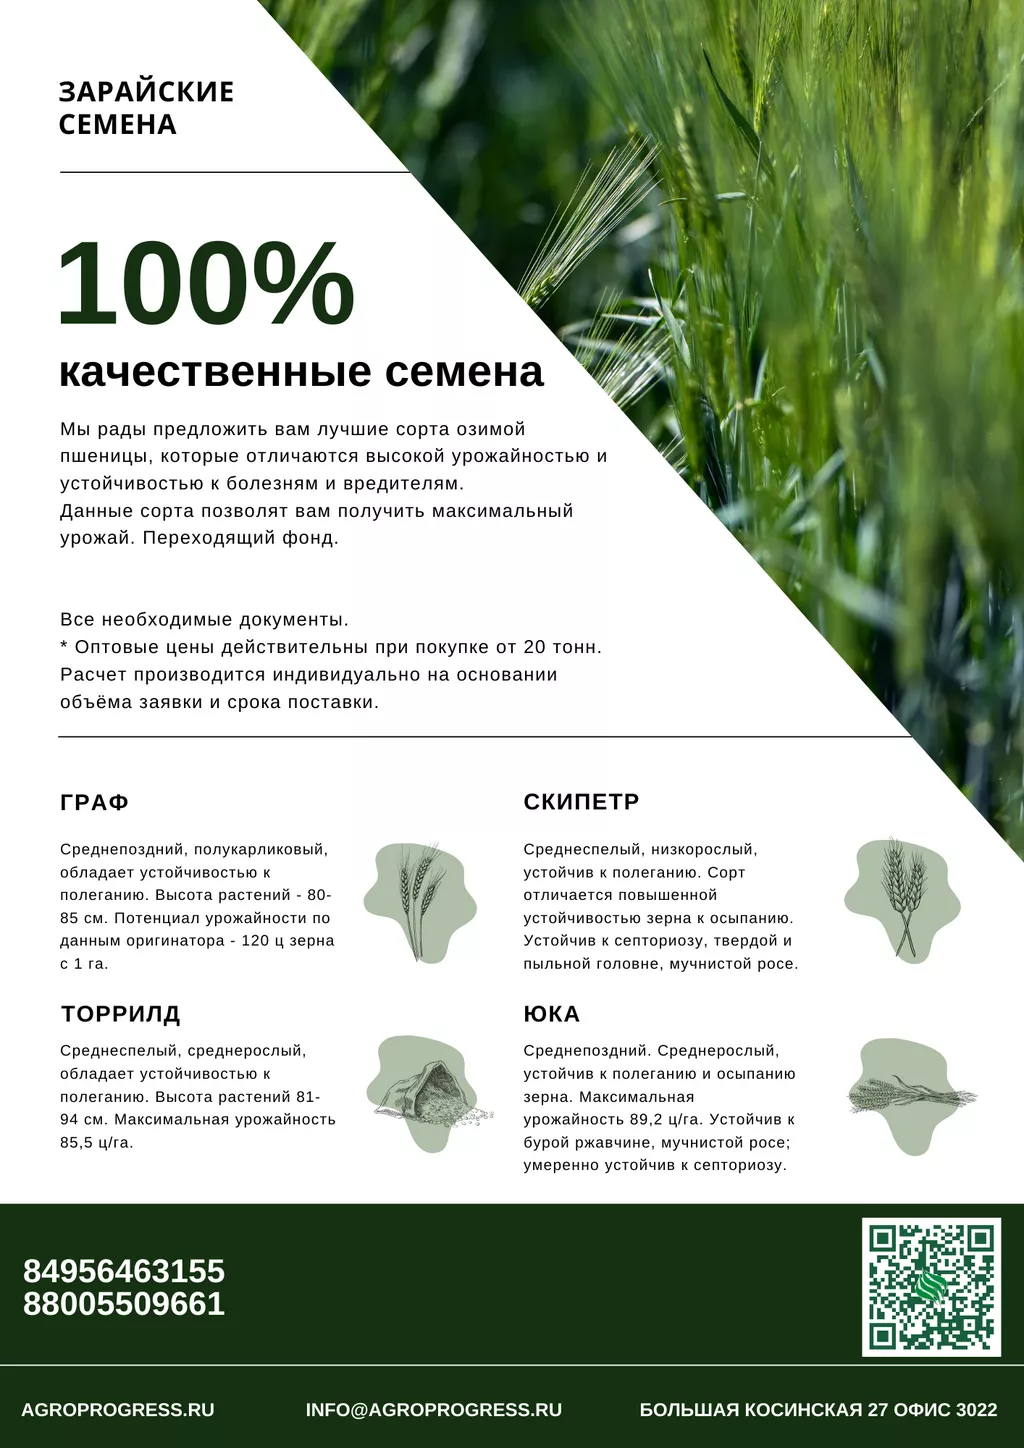 семена озимой пшеницы переходящего фонда в Москве и Московской области